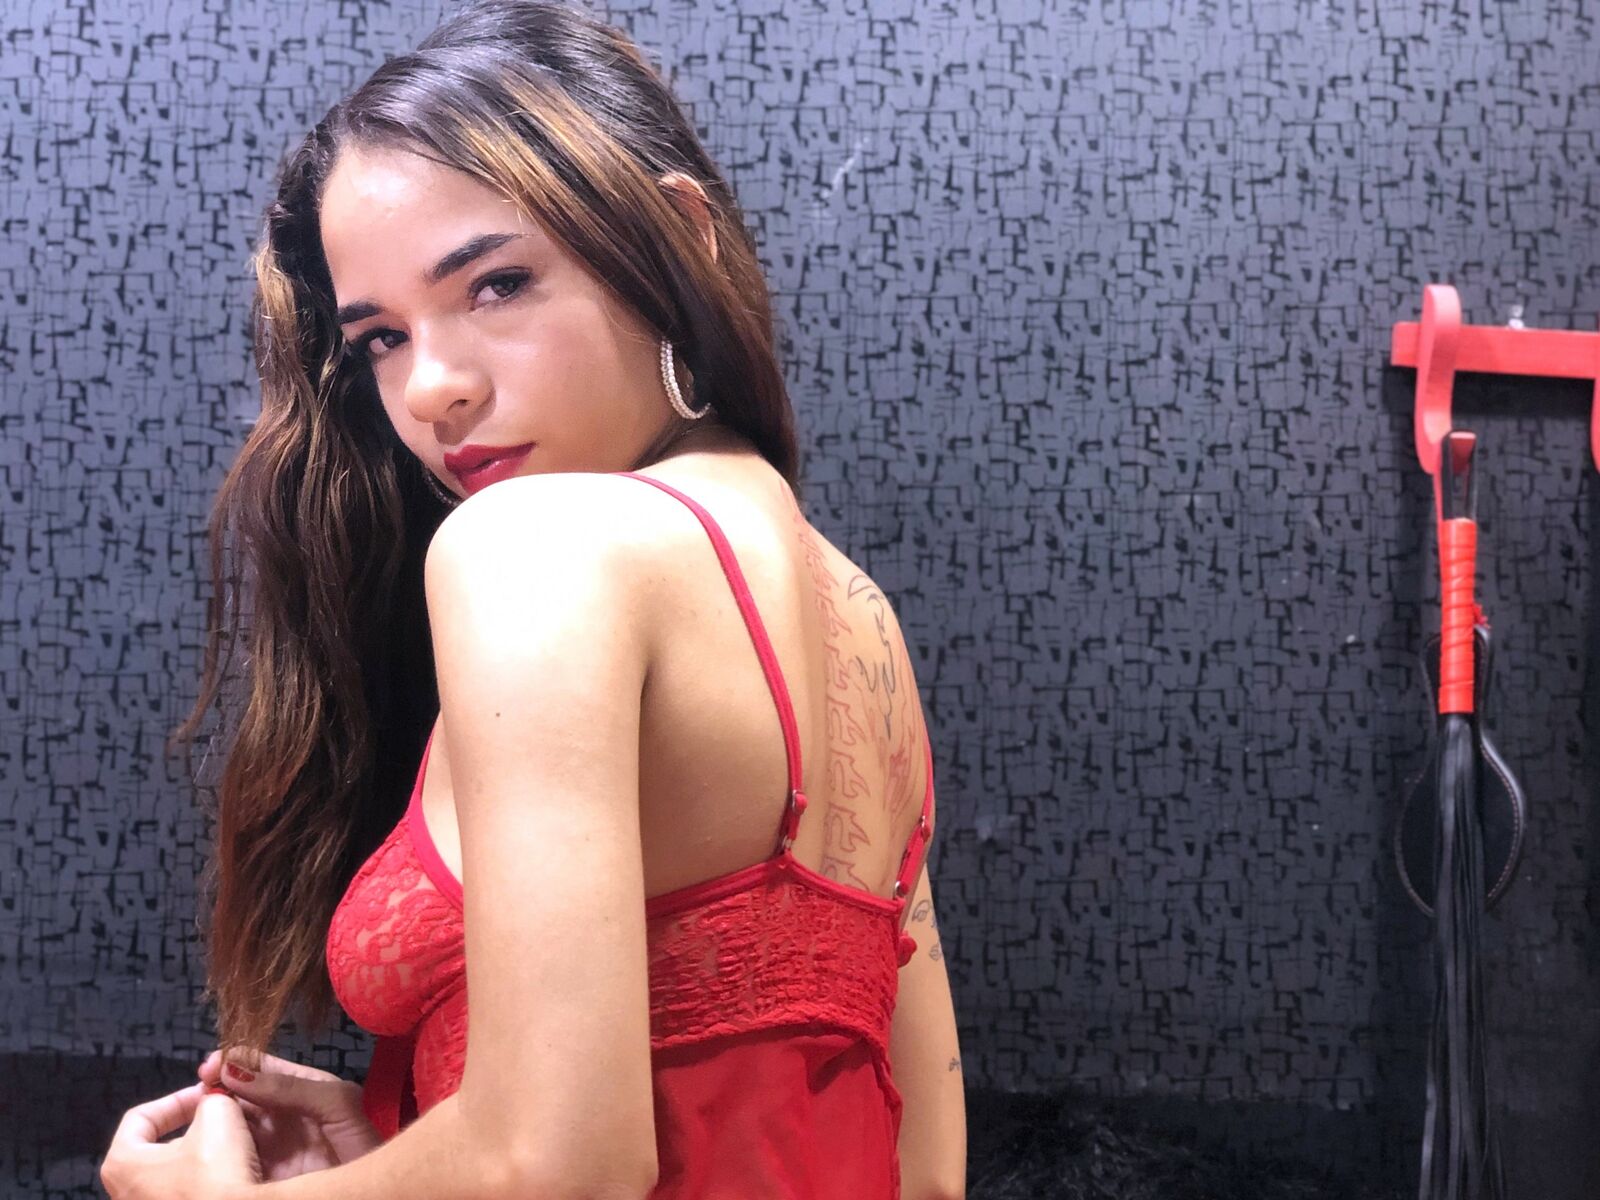 MeganIvanova - Live Sex Cam profile on Livejasmin